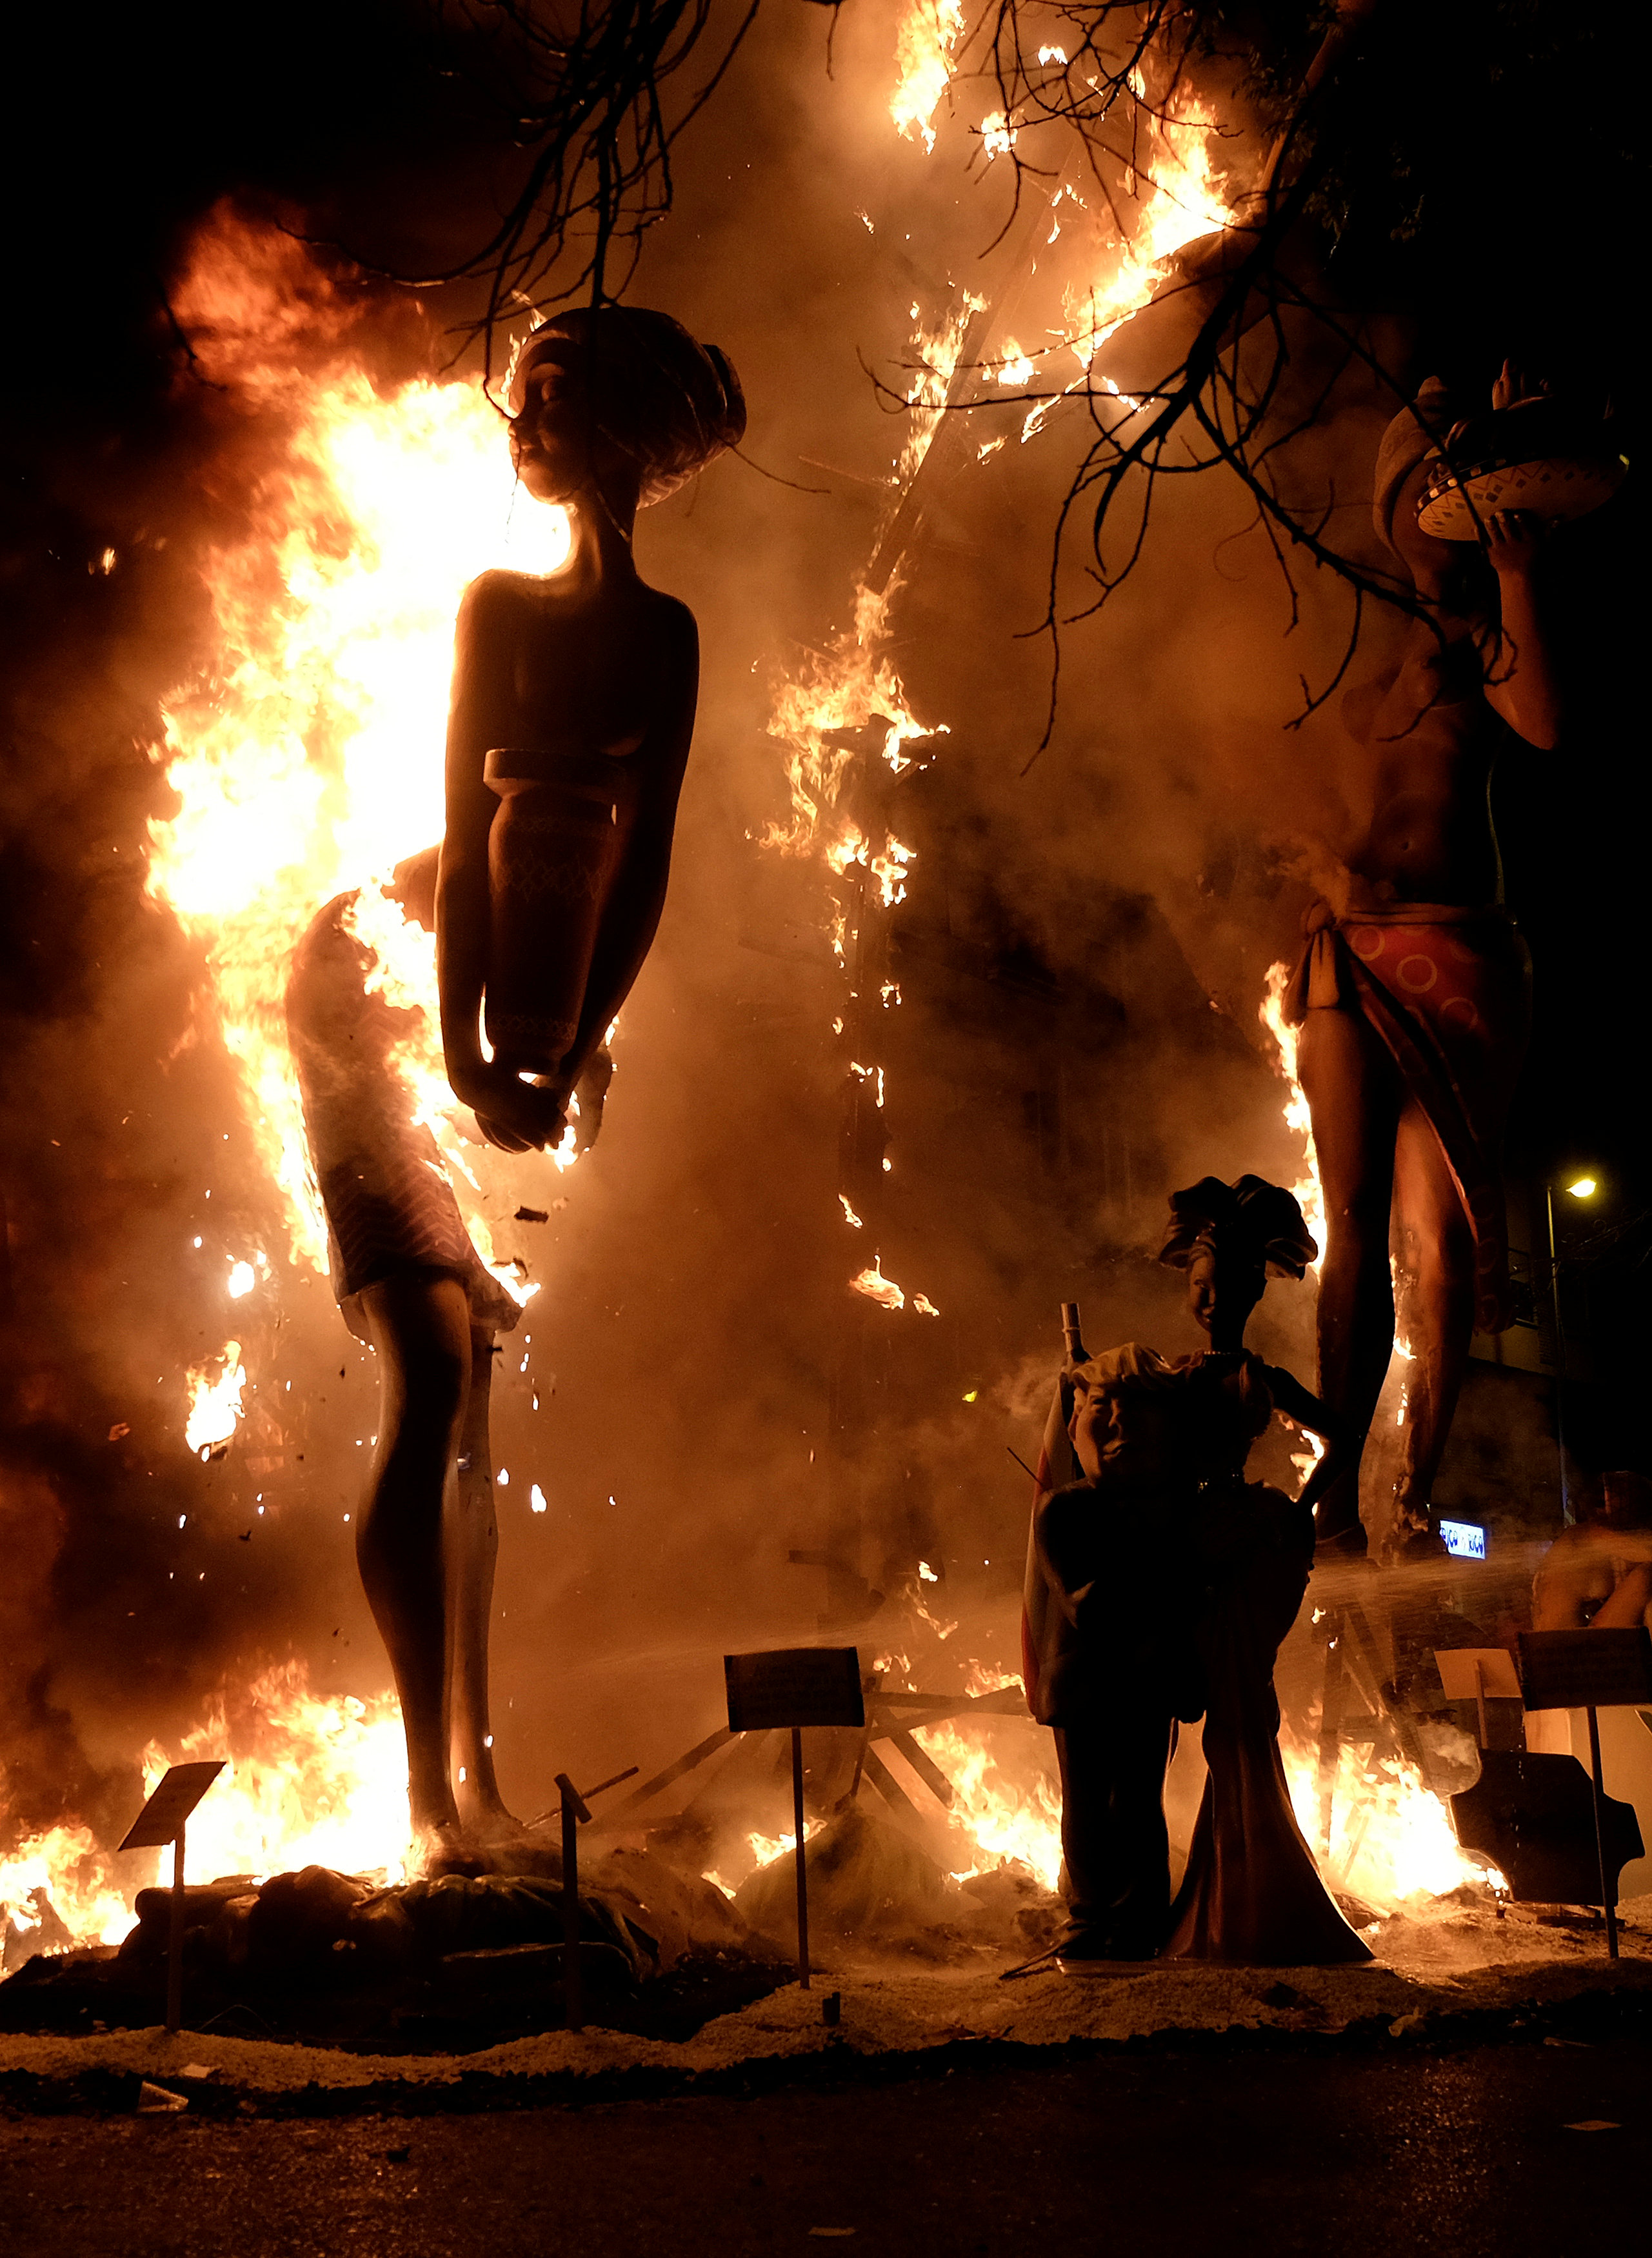 لحظة اشعال النيران فى  تماثيل لشخصيات عامة